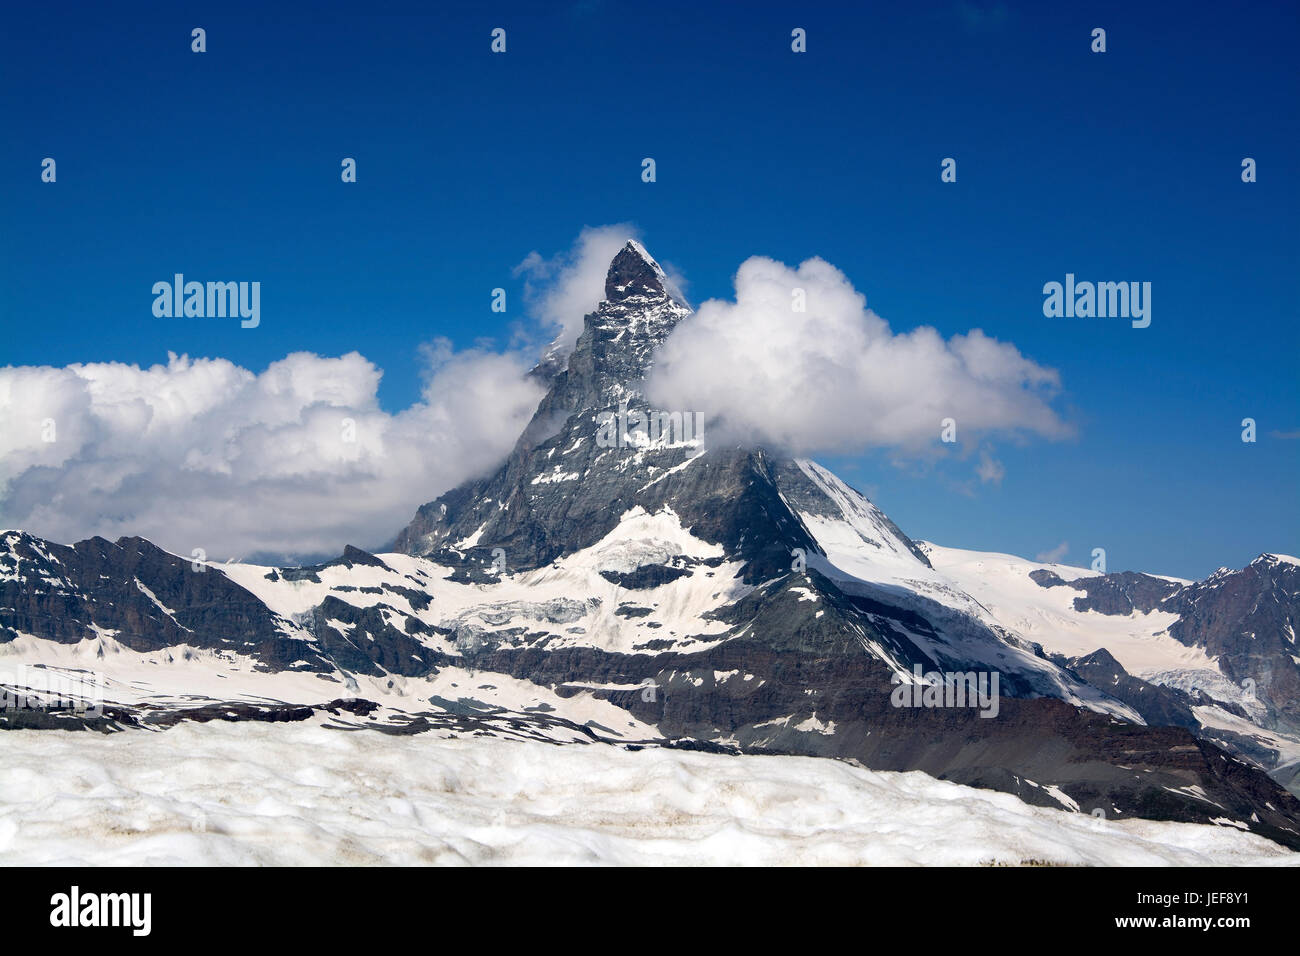 Le Mont Cervin en Suisse est l'une des plus hautes montagnes des Alpes avec 4478 mètres de hauteur., Das Matterhorn in der Schweiz ist mit 4478 H Metern Banque D'Images